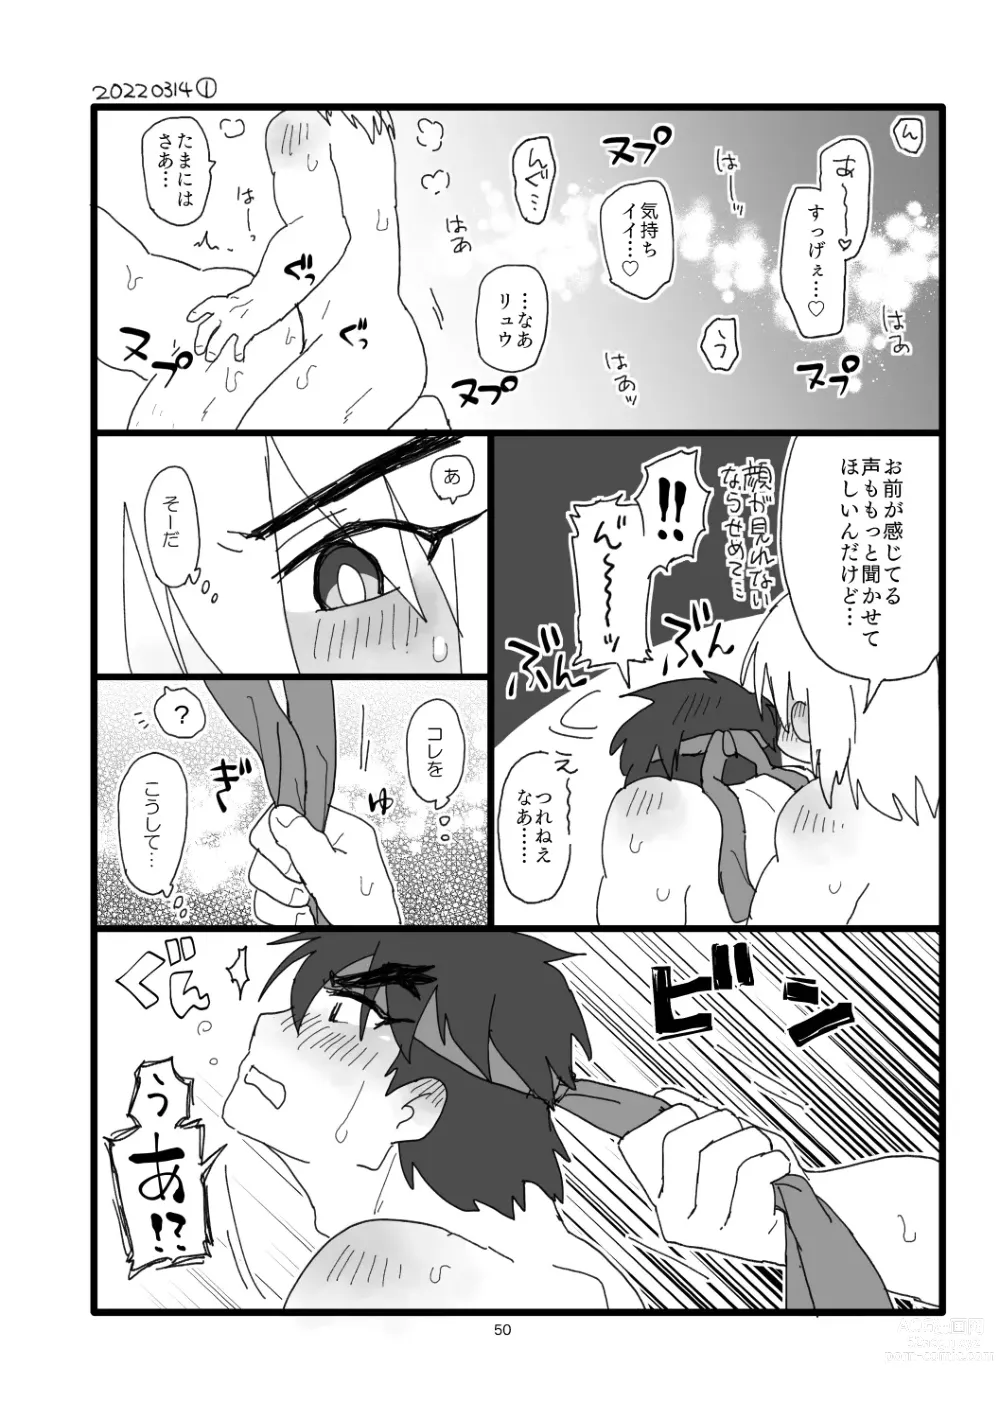 Page 49 of doujinshi Kobushi Kiss